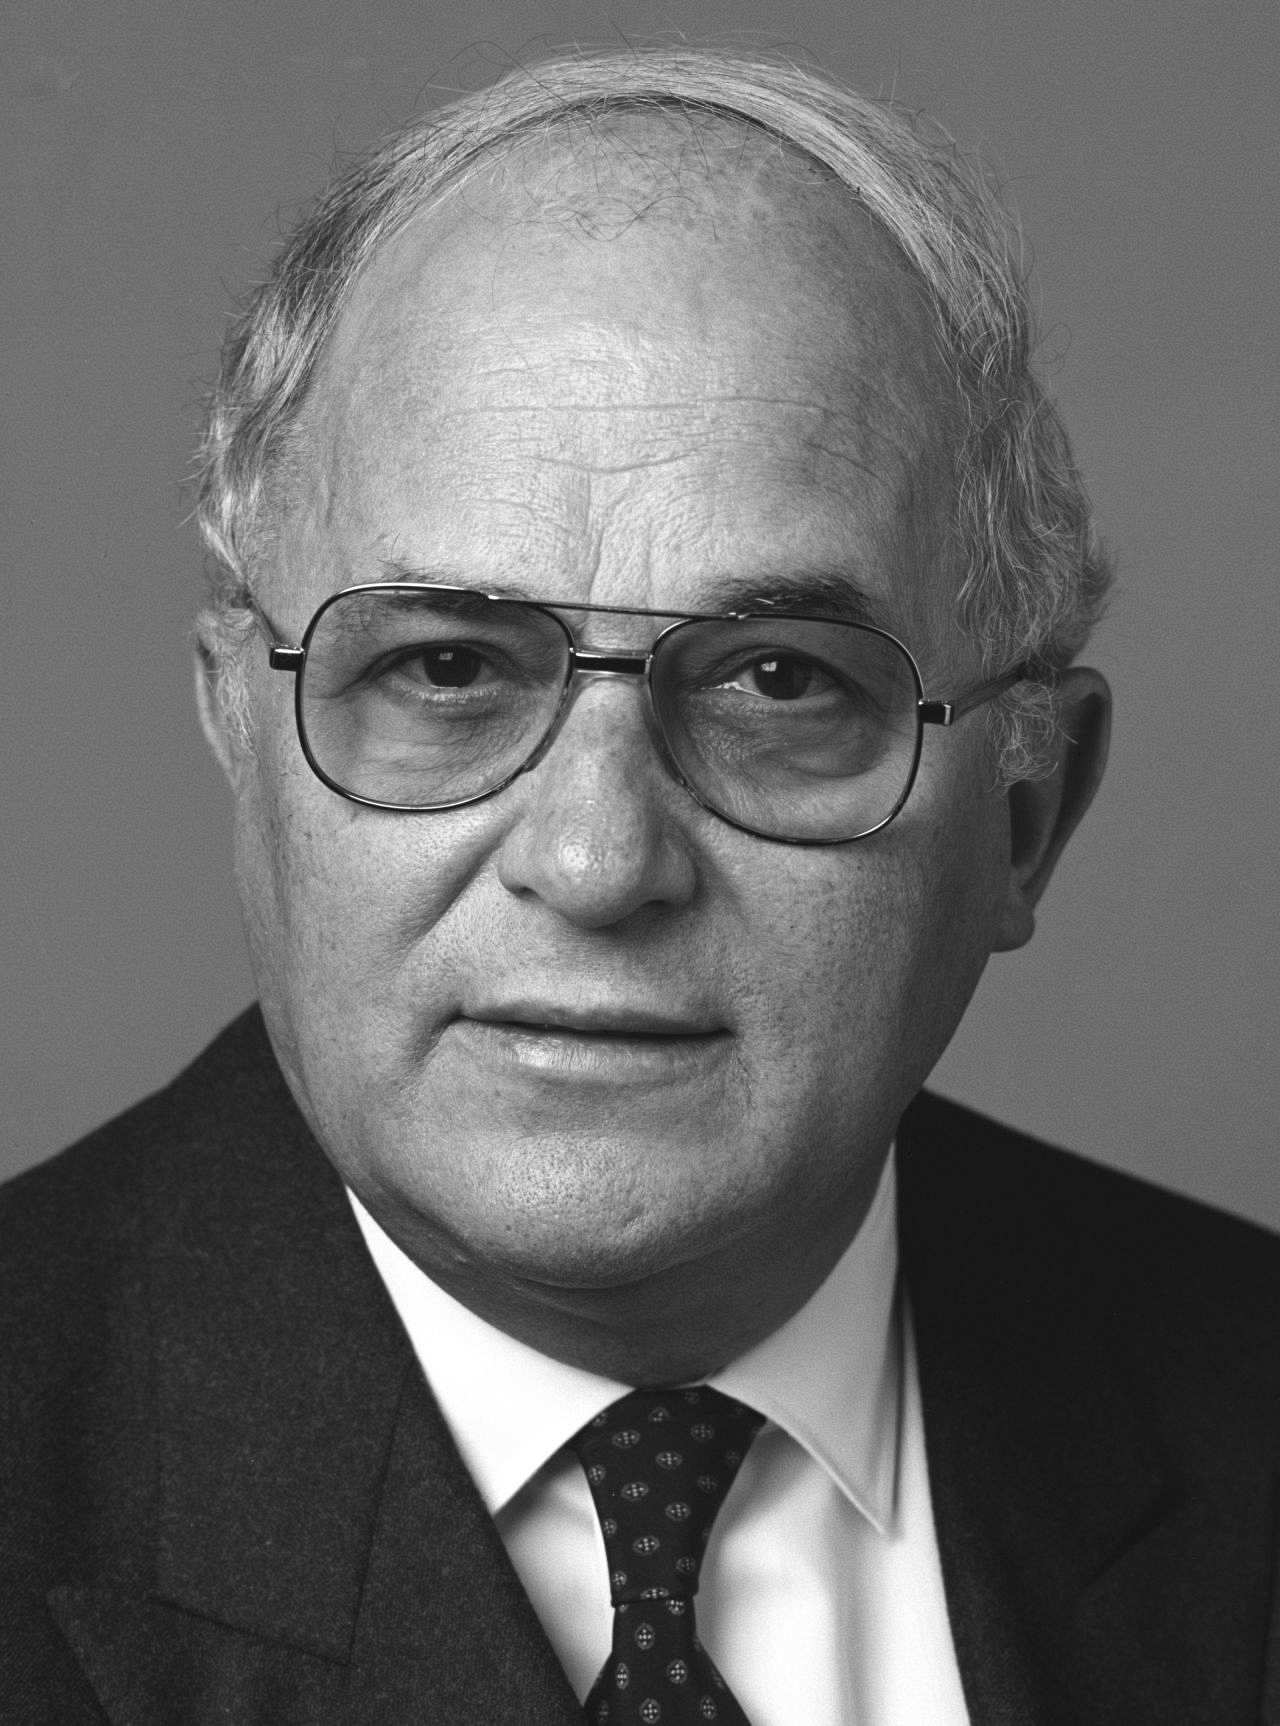 Porträtfoto Rainer Barzel, Bundesminister für innerdeutsche Beziehungen (1982-1983), Bundestagspräsident (1983-1984) von 1983.